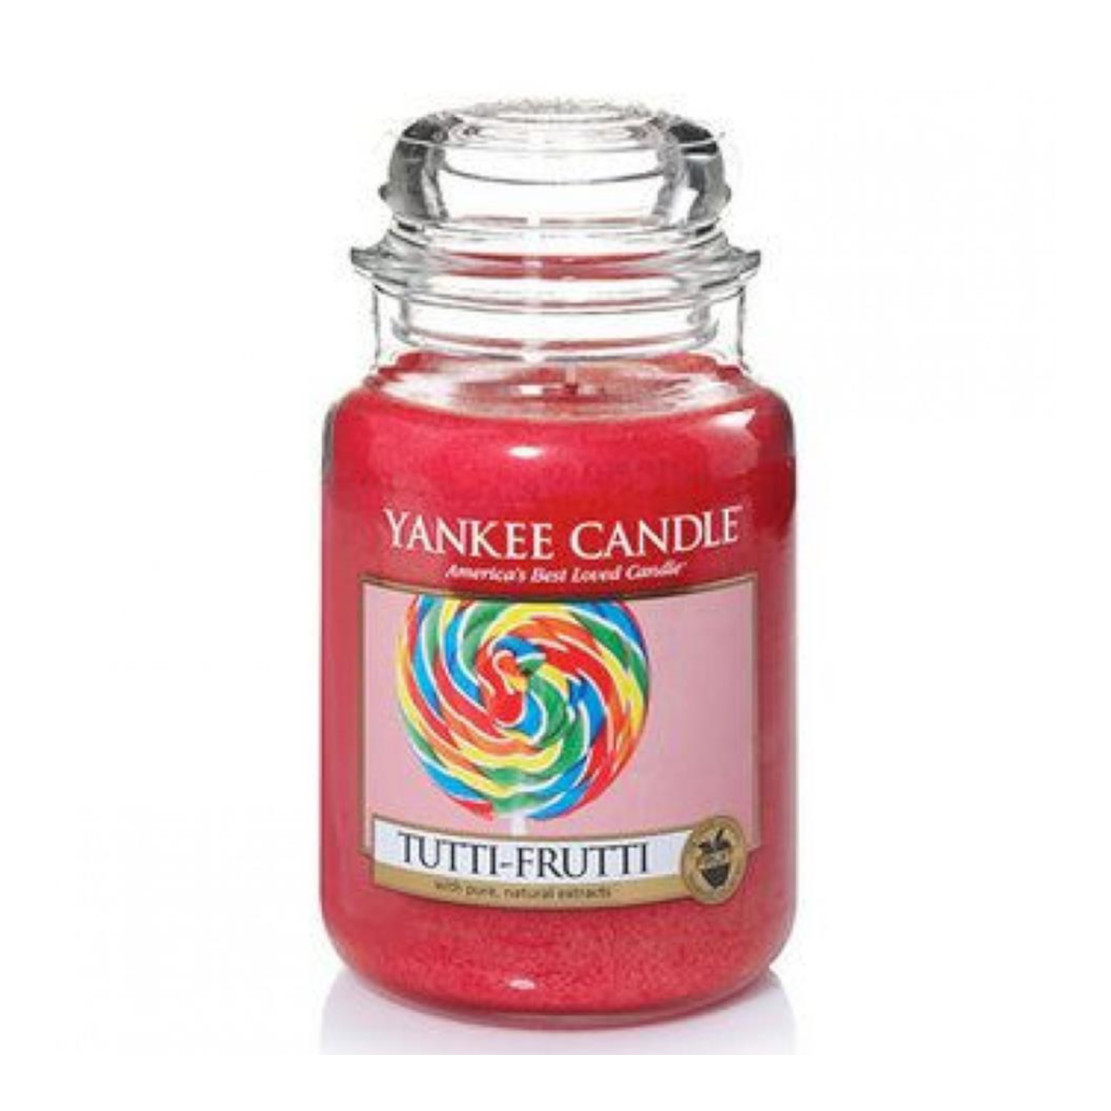 Yankee Candle Tutti Frutti Large Jar Candle